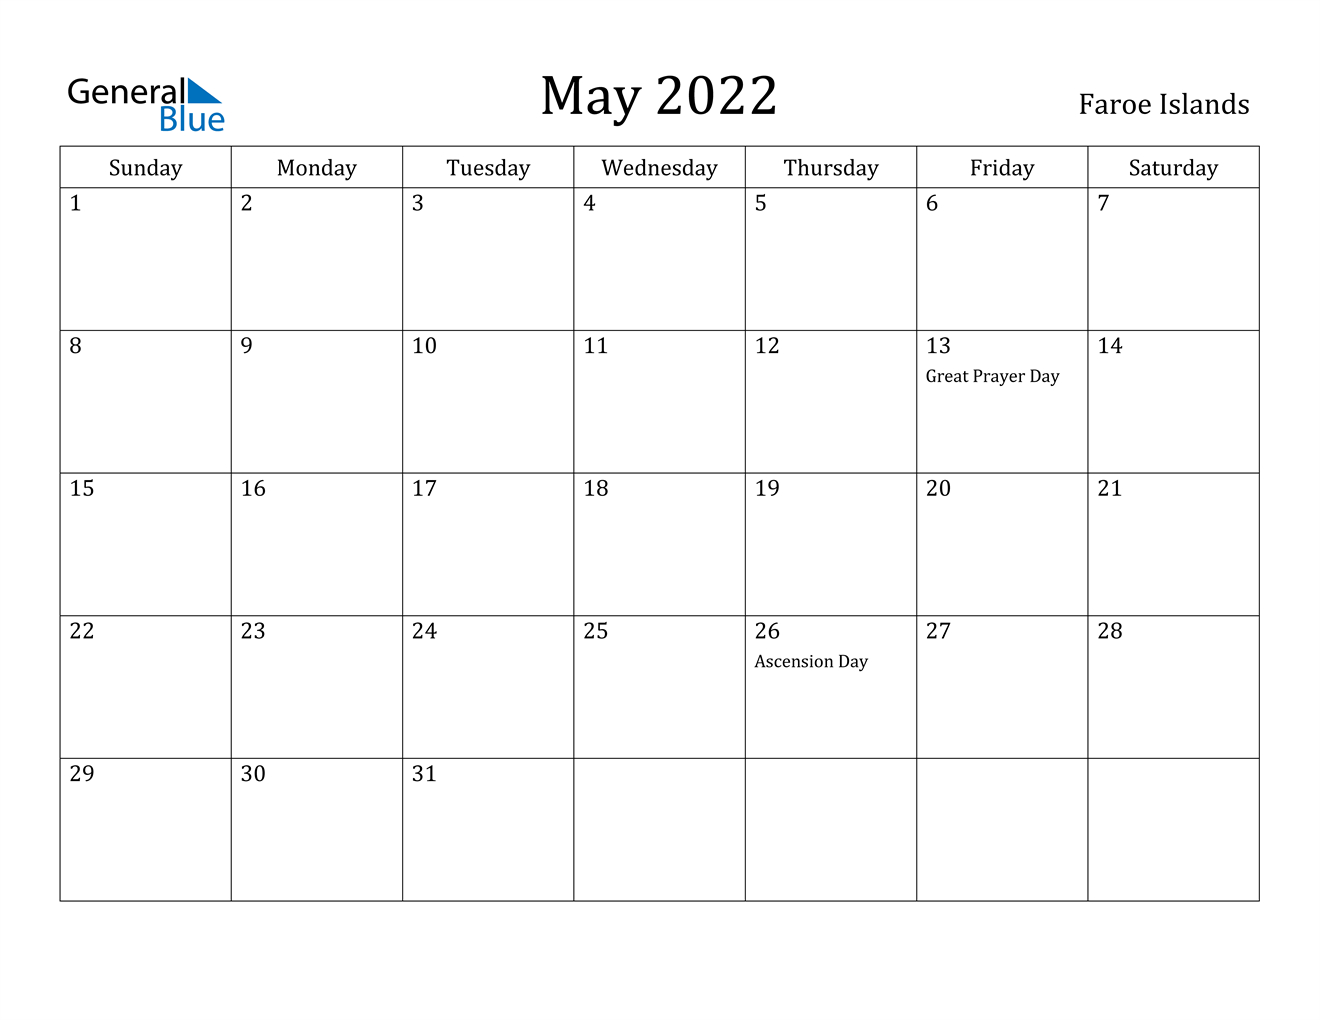 May 2022 Calendar - Faroe Islands